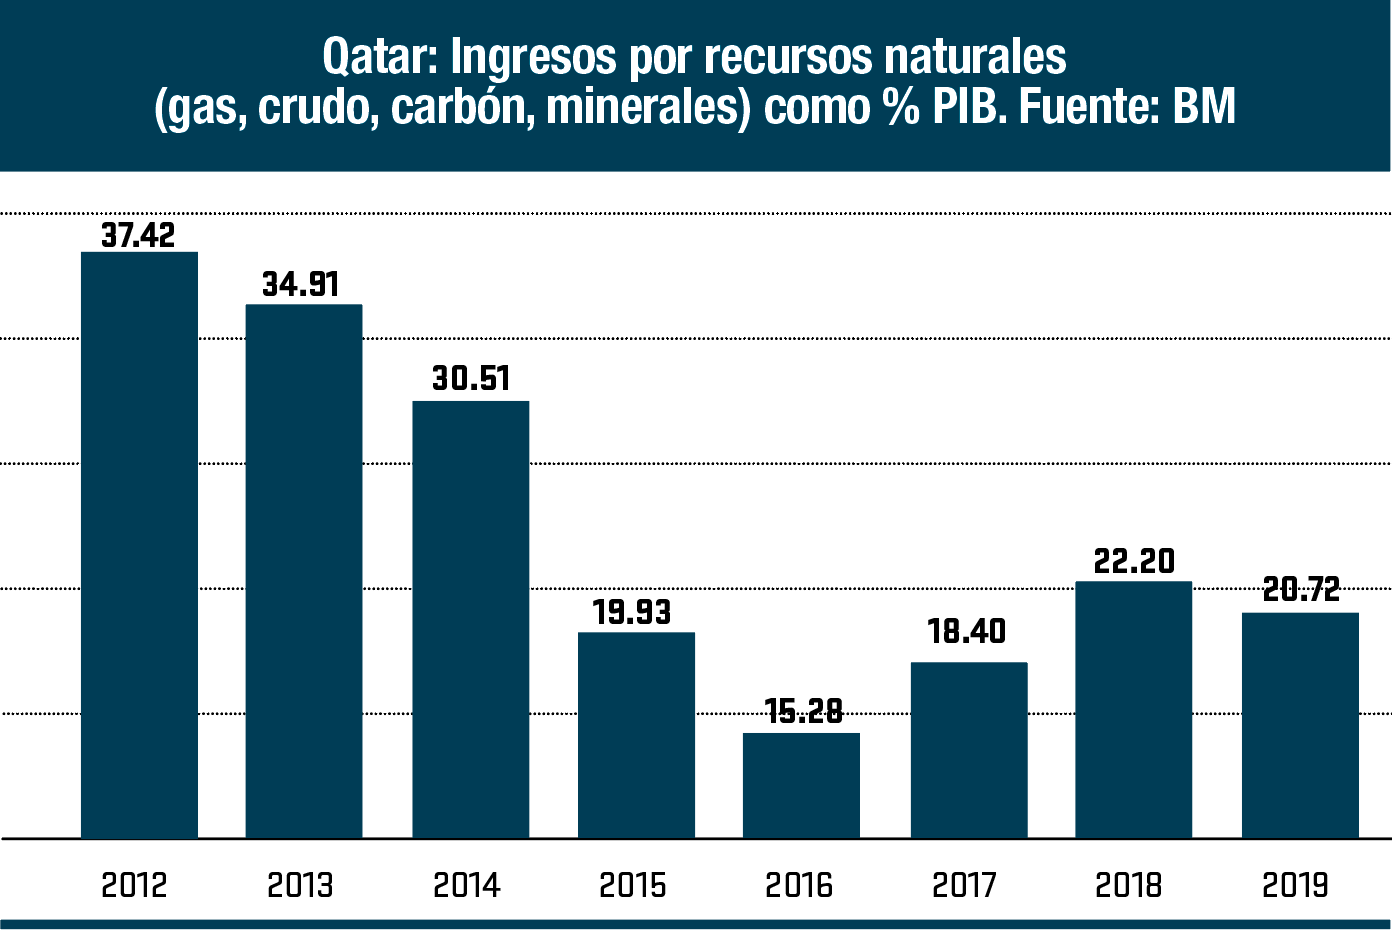 Gráfico de barras verticales: "Qatar: Ingresos por recursos naturales (gas, cruso, carbón, minerales) como % PIB", desde 2012 hasta 2019.